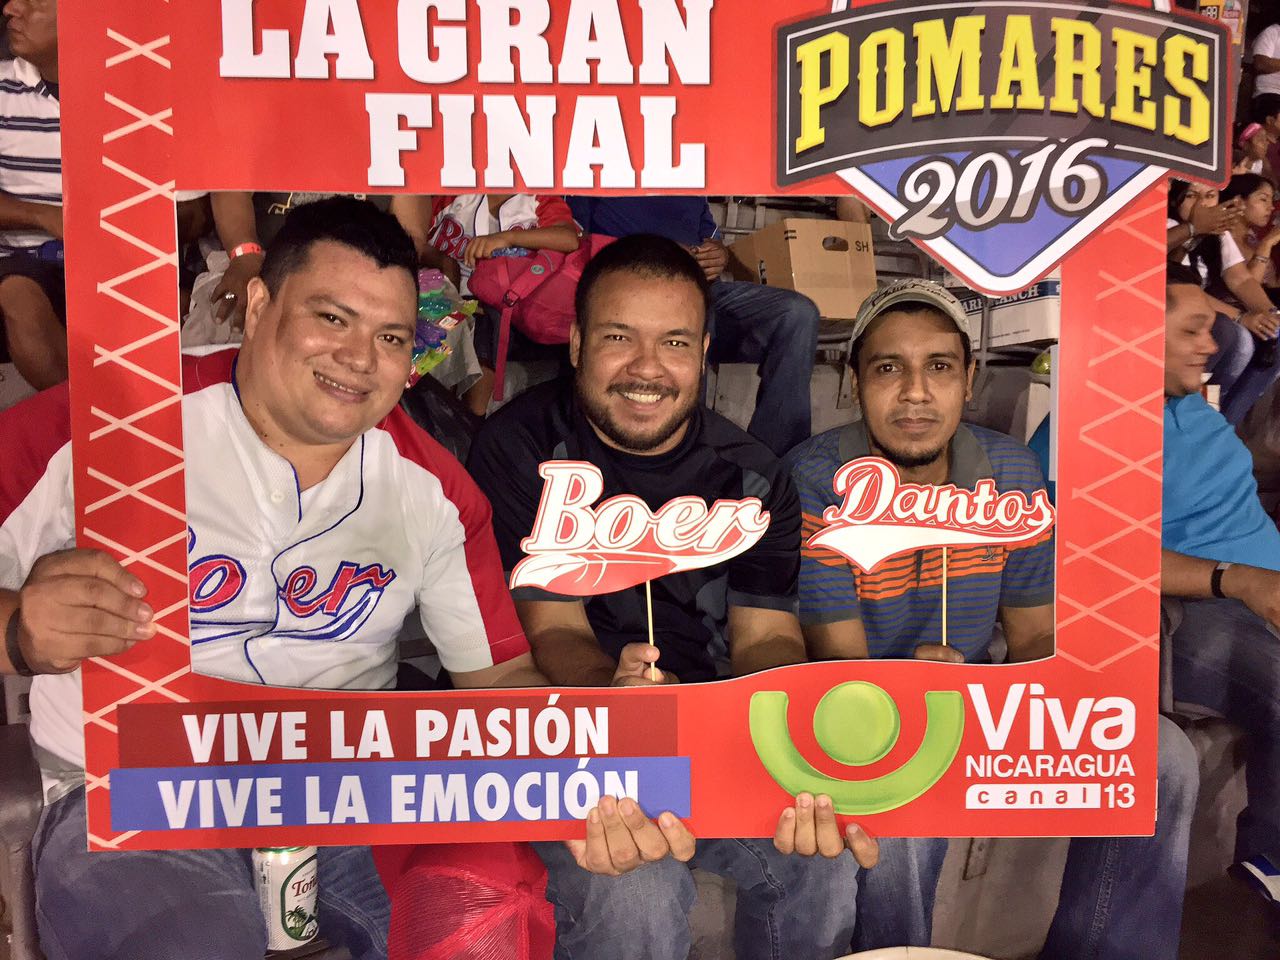 La final del Pomares 2016 se vive con emoción y alegría, es la fiesta deportiva de los nicaragüenses